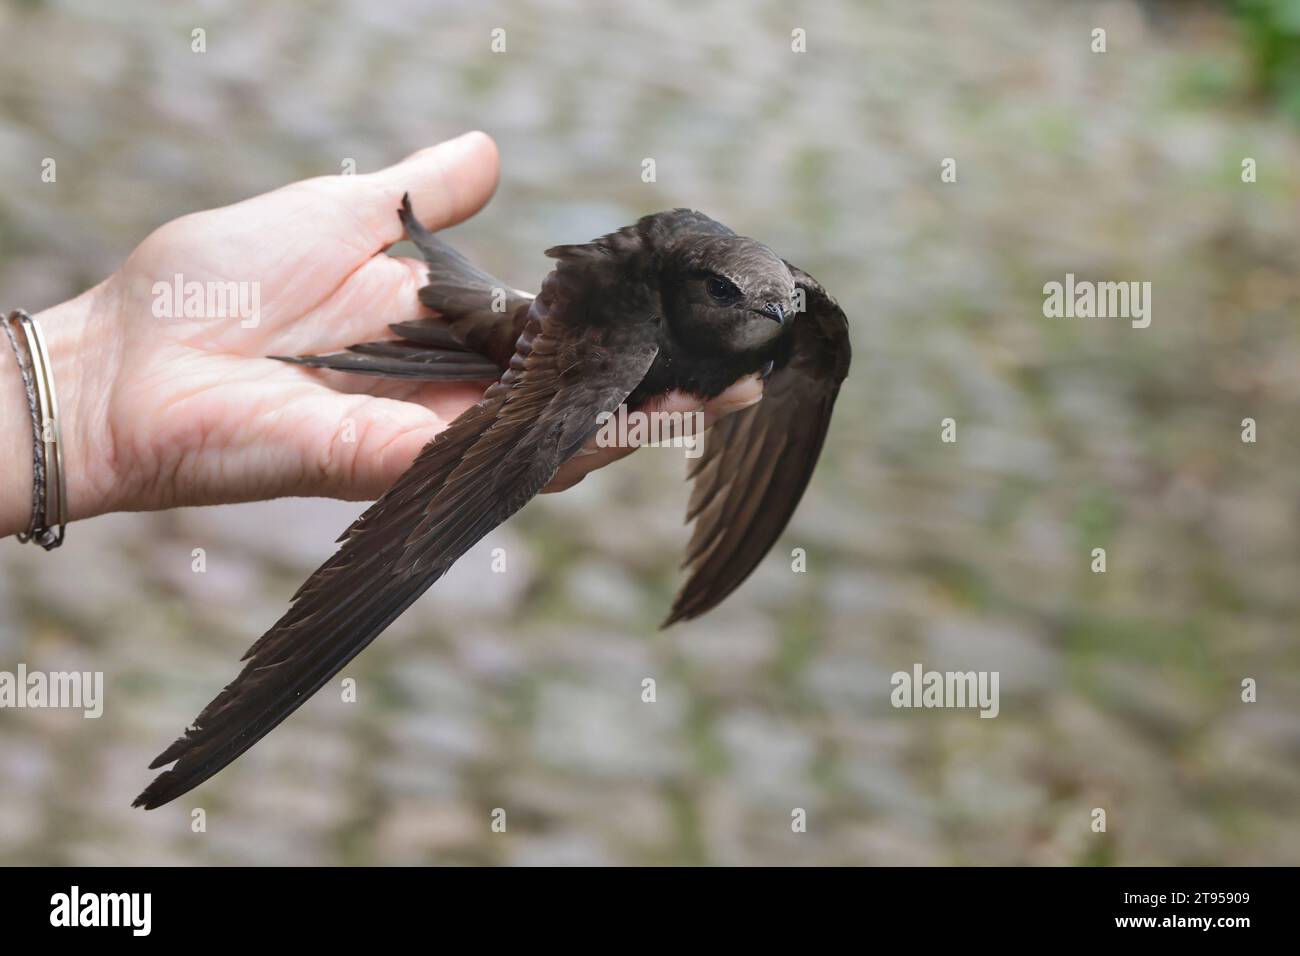 Rapide eurasien (Apus apus), perché dans une main, oiseau dans le besoin d'aide est libéré dans la nature, Allemagne Banque D'Images